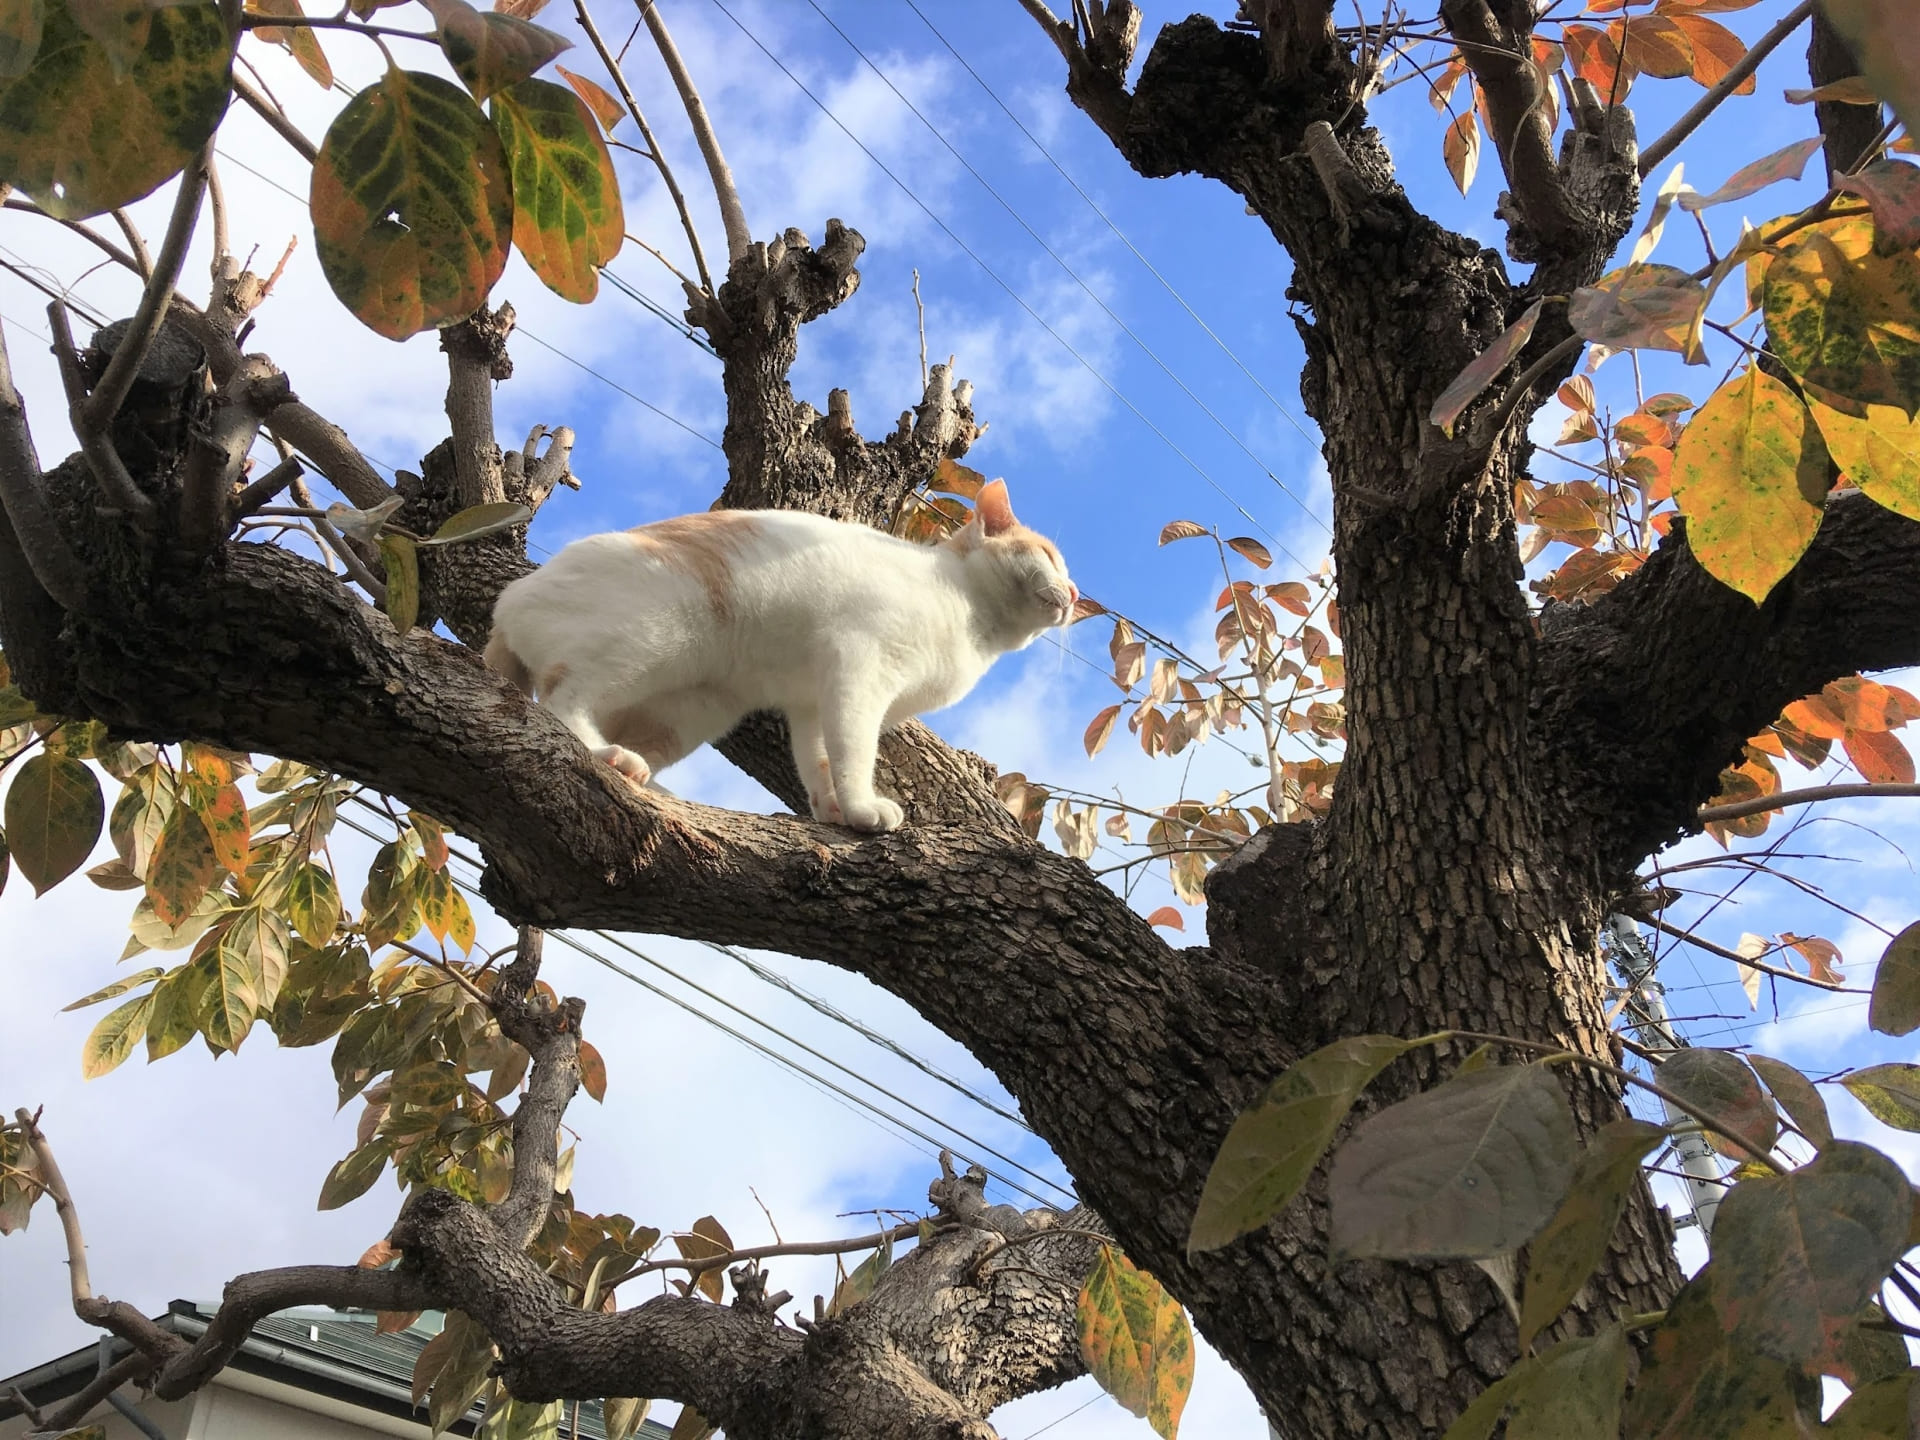 「秋の空、猫も満喫中。どこまで登っていくのでしょう」